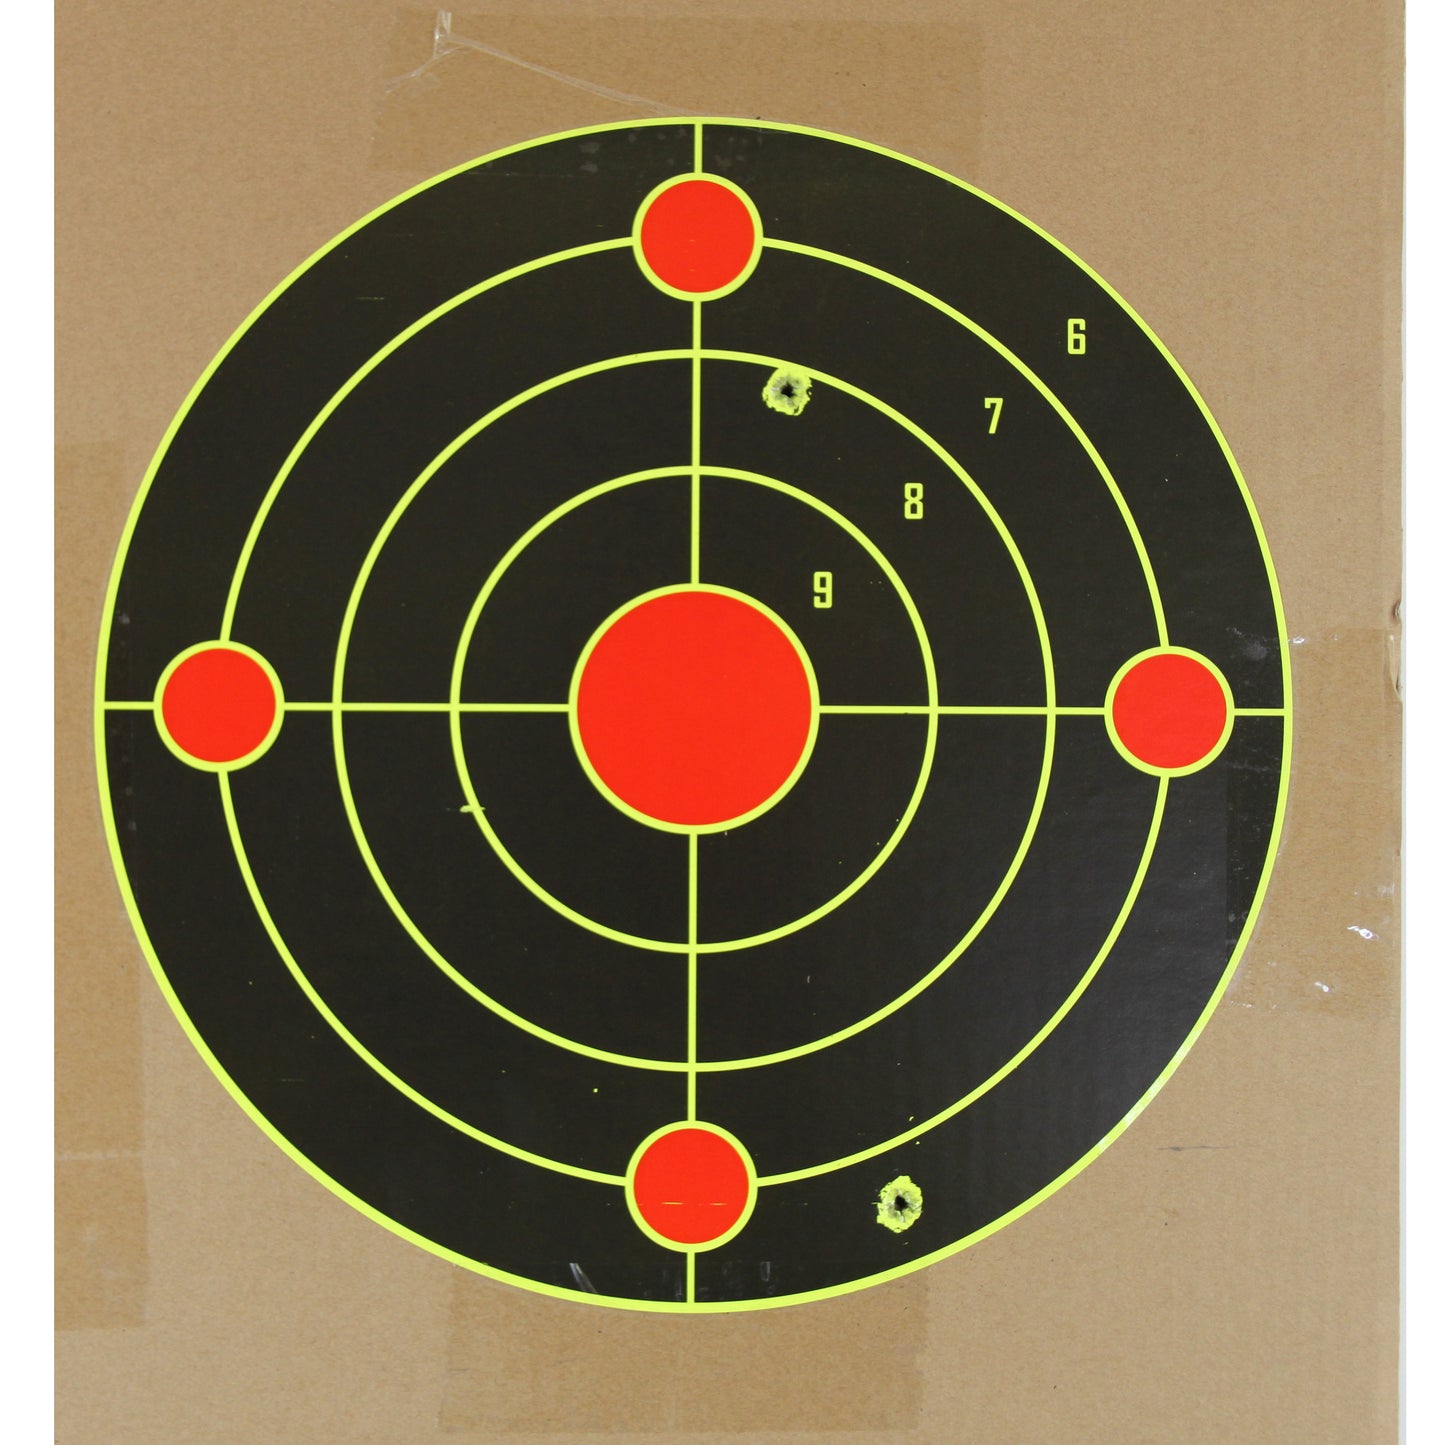 ATFLBOX 50pcs 12''x12'' Splatter Paper Shooting Targets for Outdoor, Range BB Gun, Airsoft, Air Gun